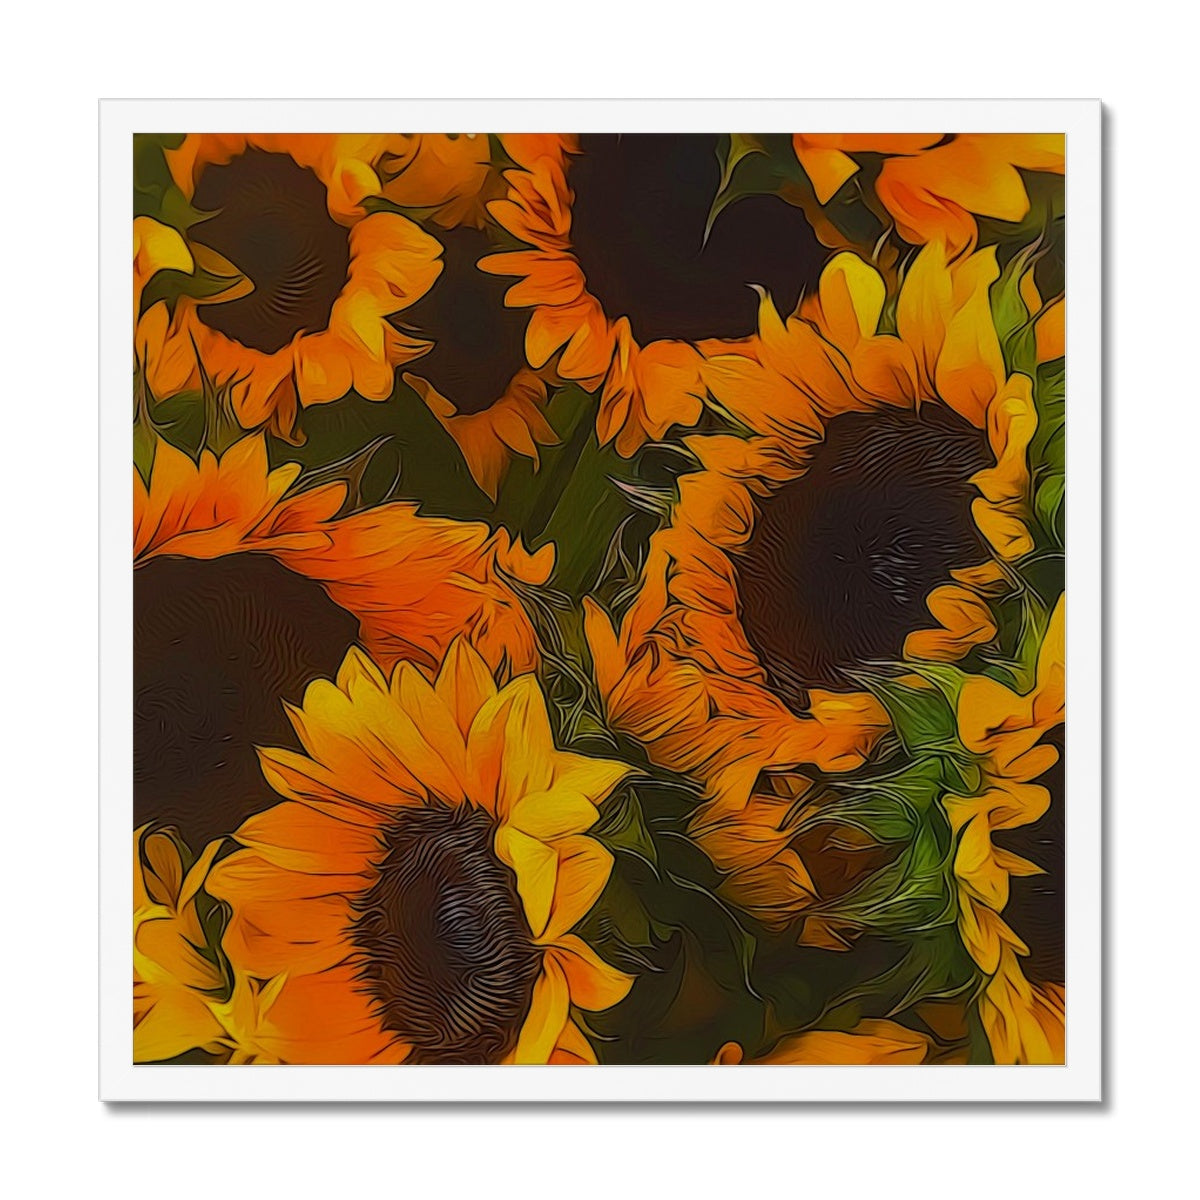 Sunflowers Framed Print